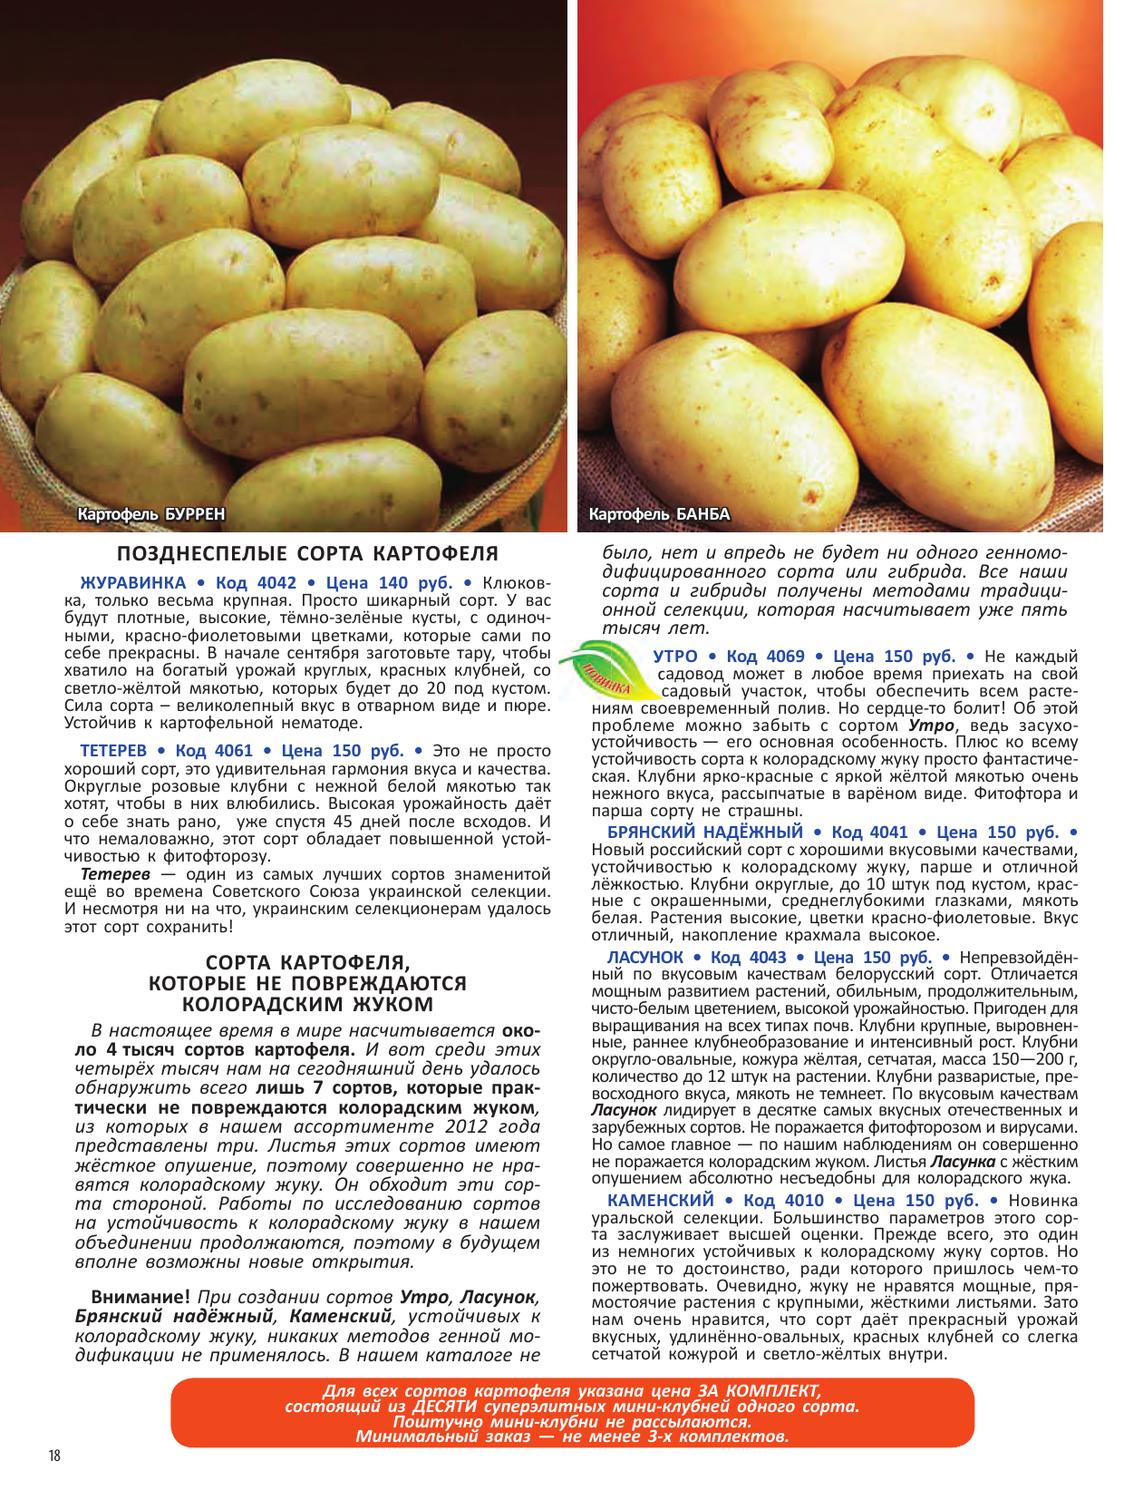 Картофель сказка: описание и характеристика сорта, урожайность, отзывы, фото